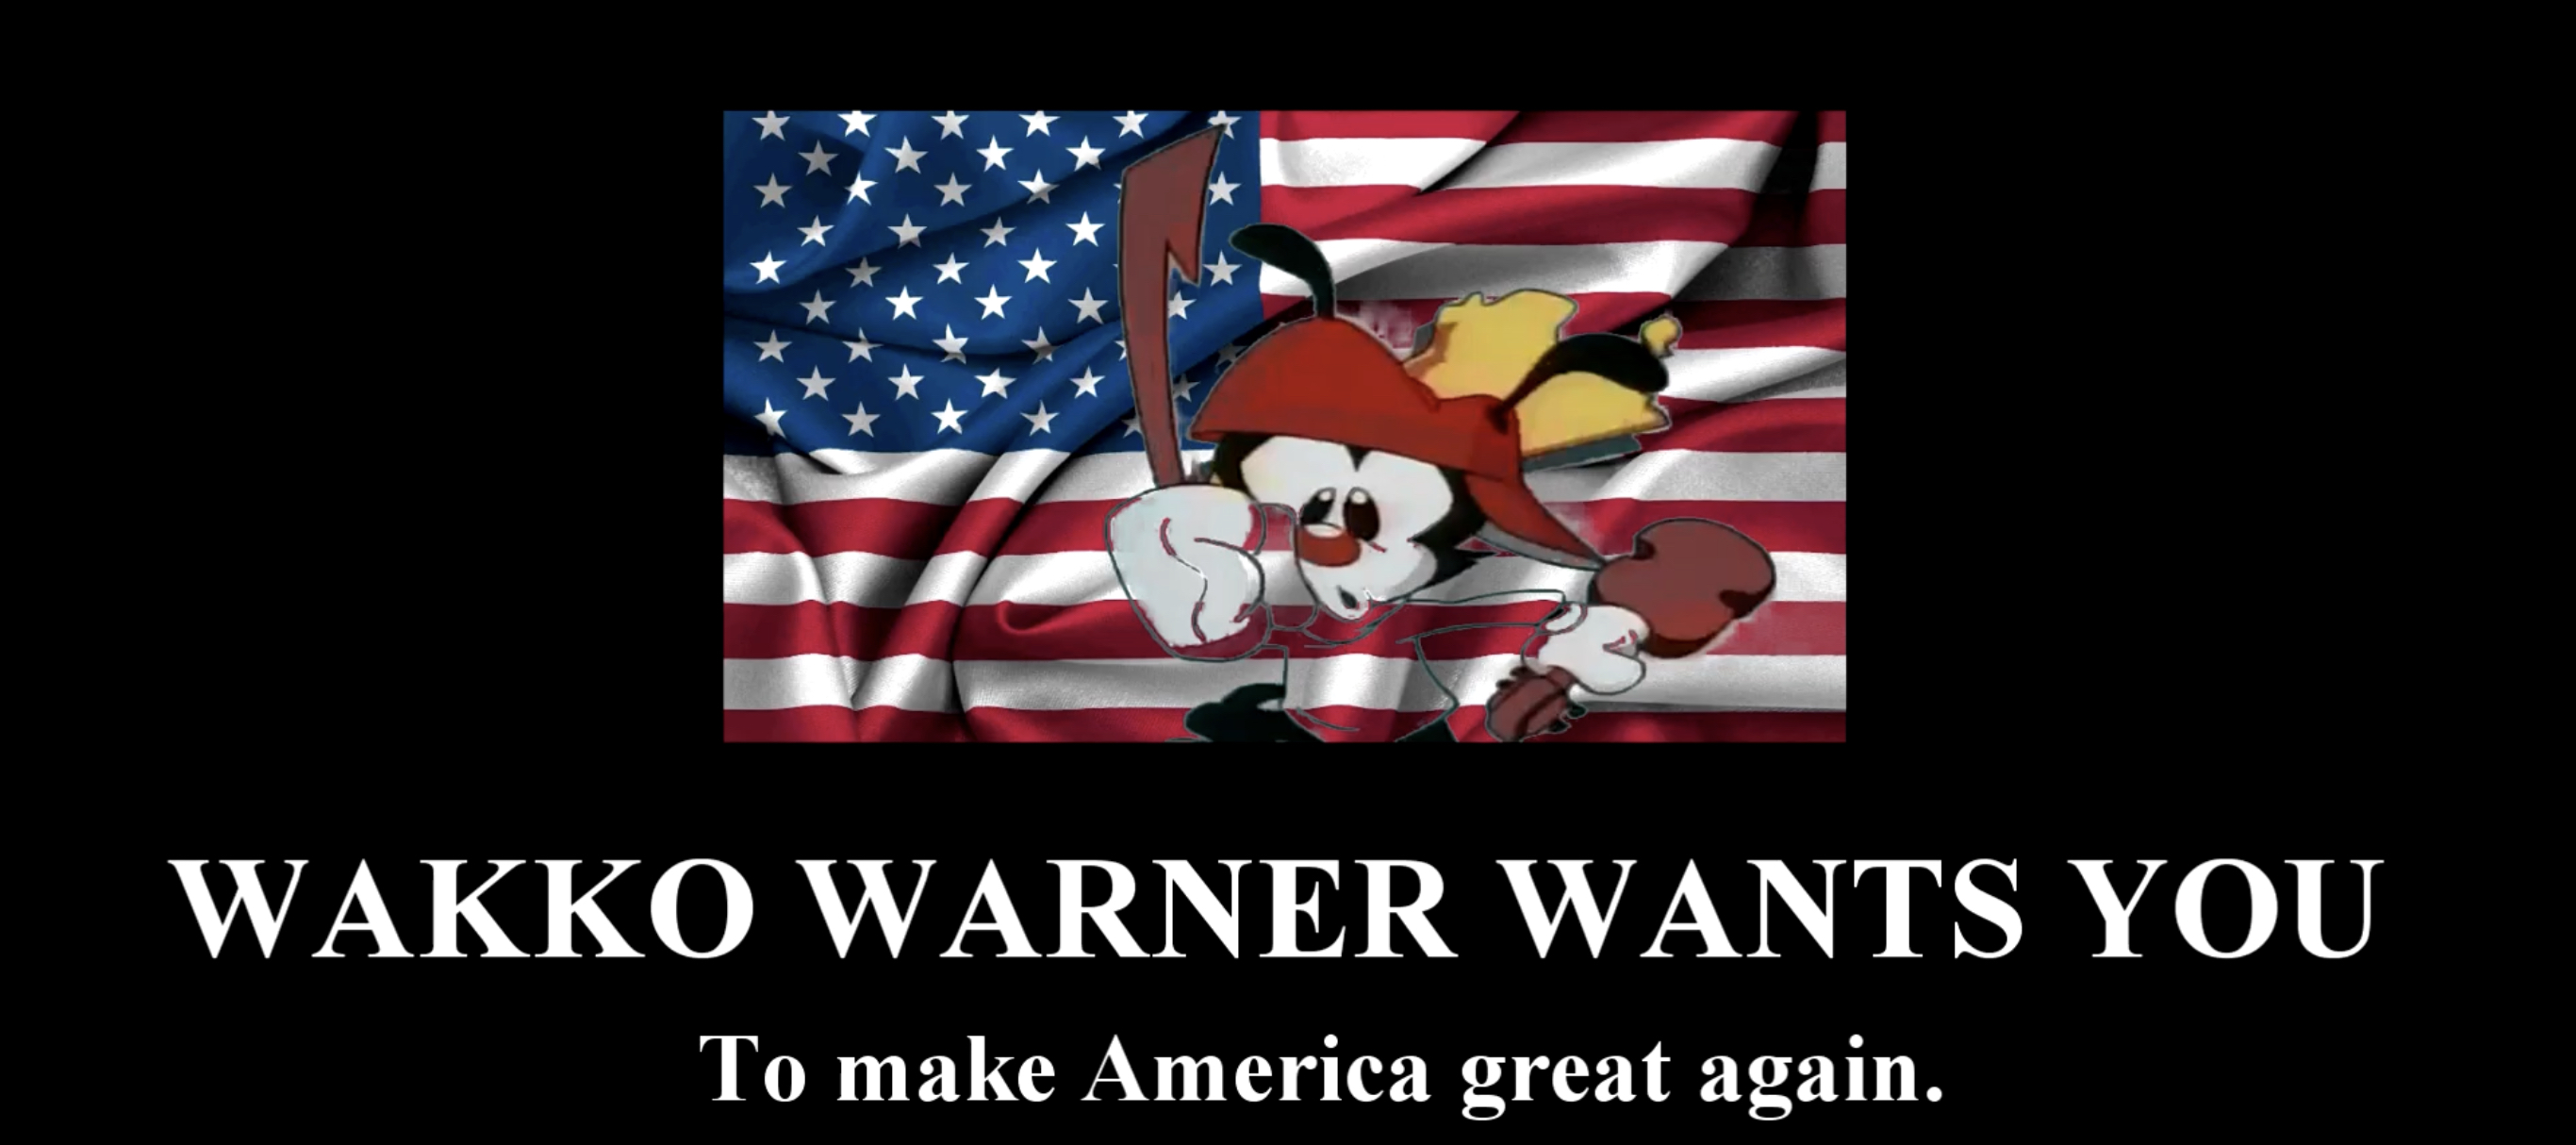 Wakko Warner wants you to make America great again Blank Meme Template